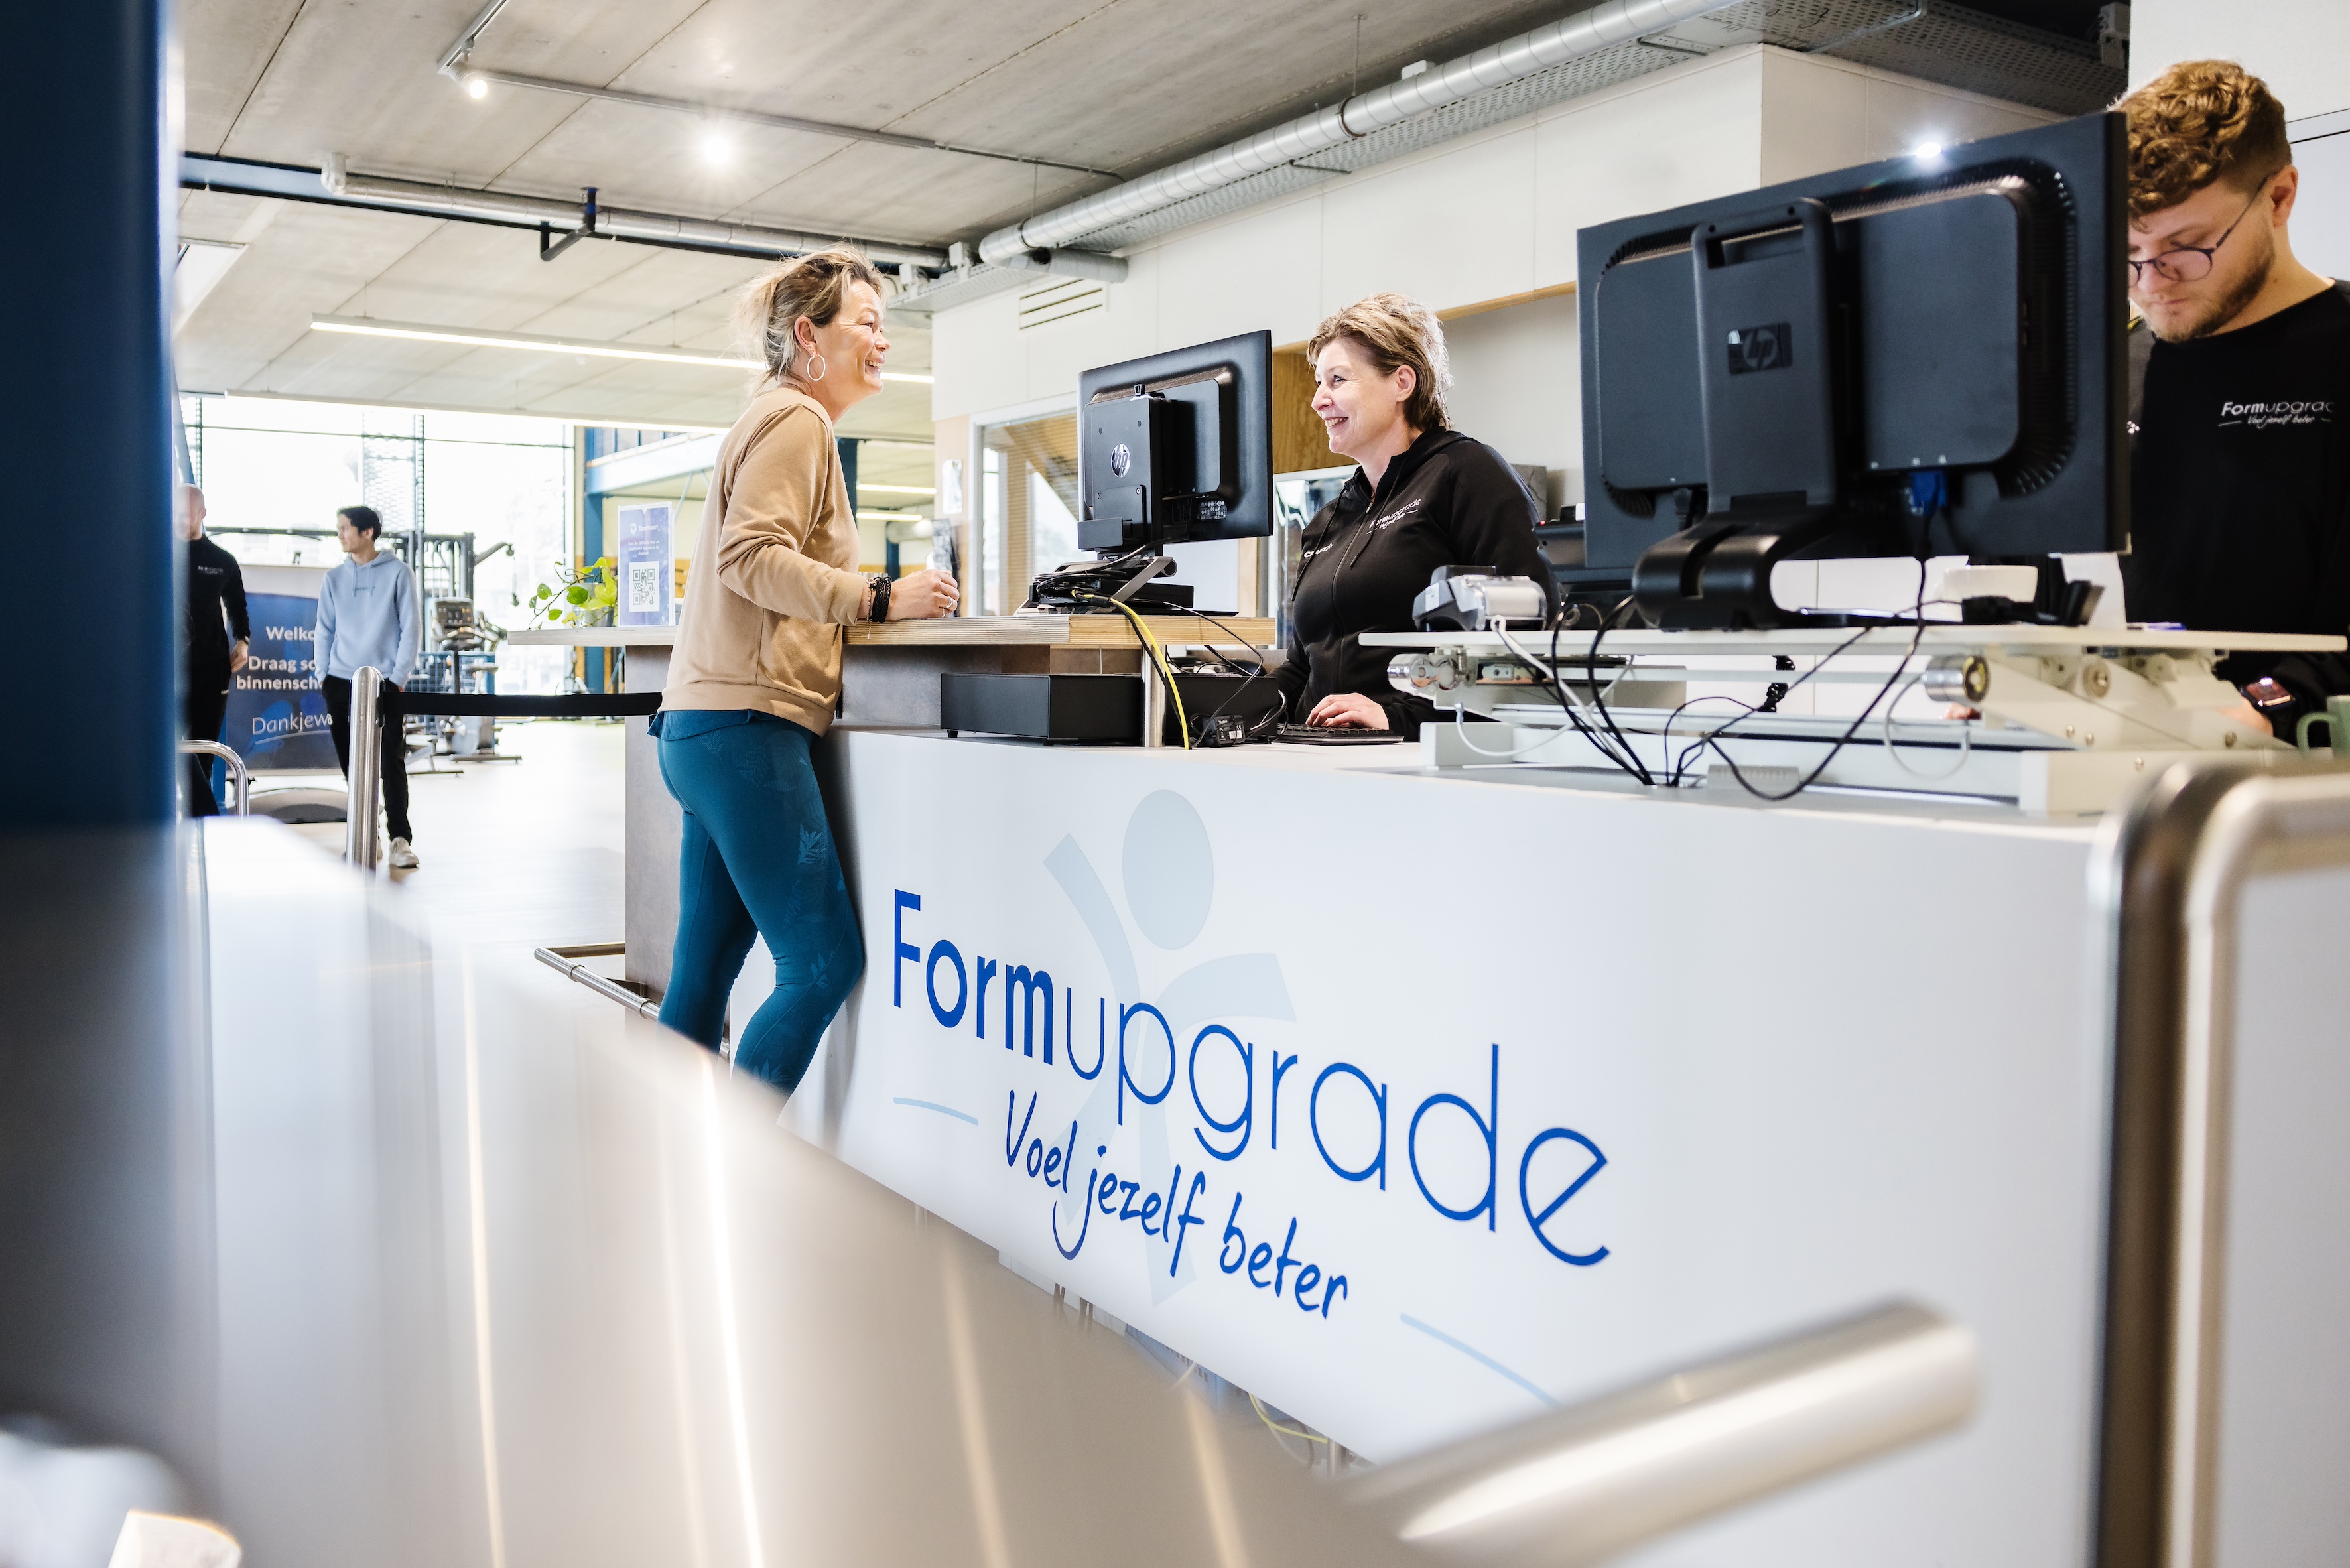 Contact met Formupgrade in Arnhem